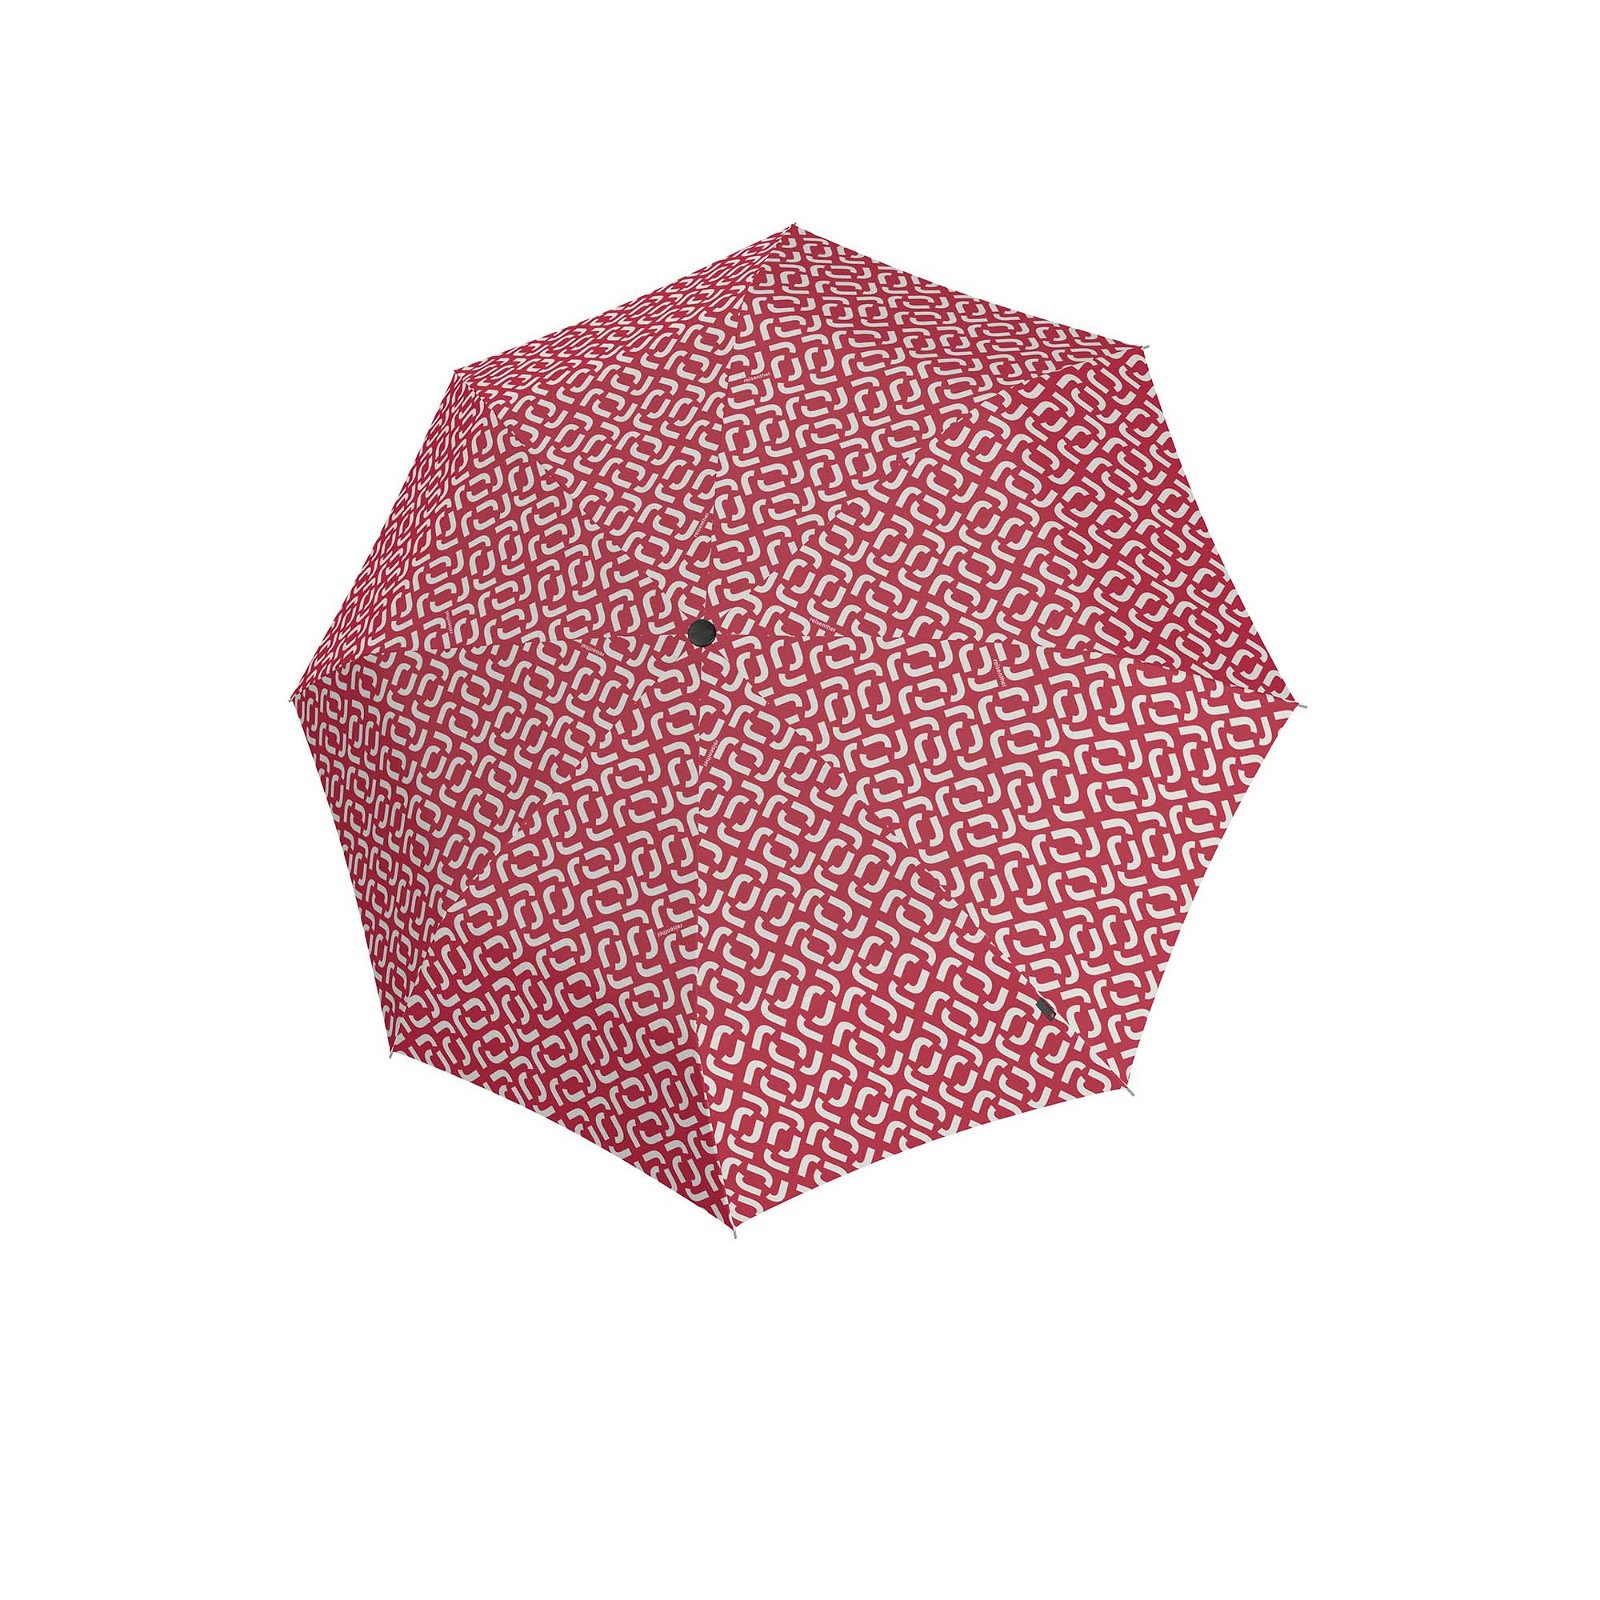 Regenschirm pocket classic